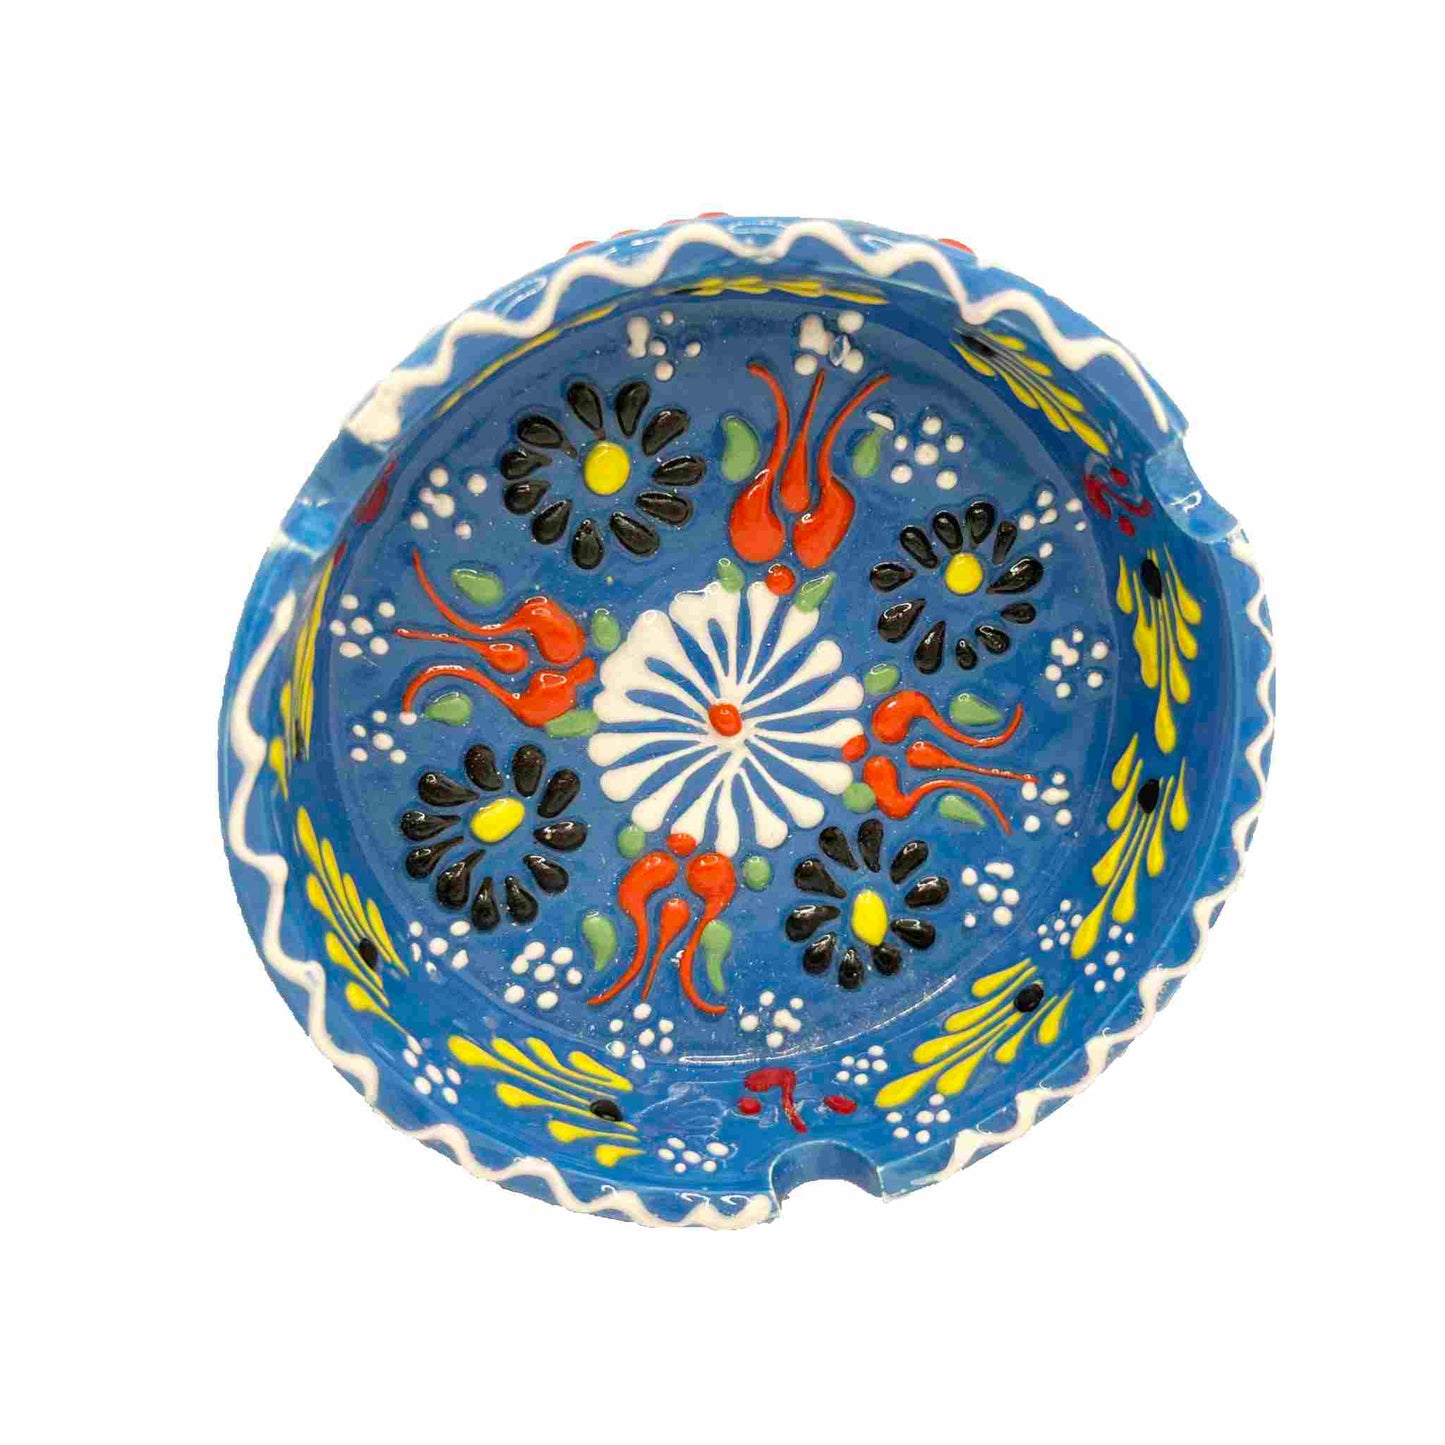 Cenicero de cerámica turca, artesanal, grande Lace azul claro